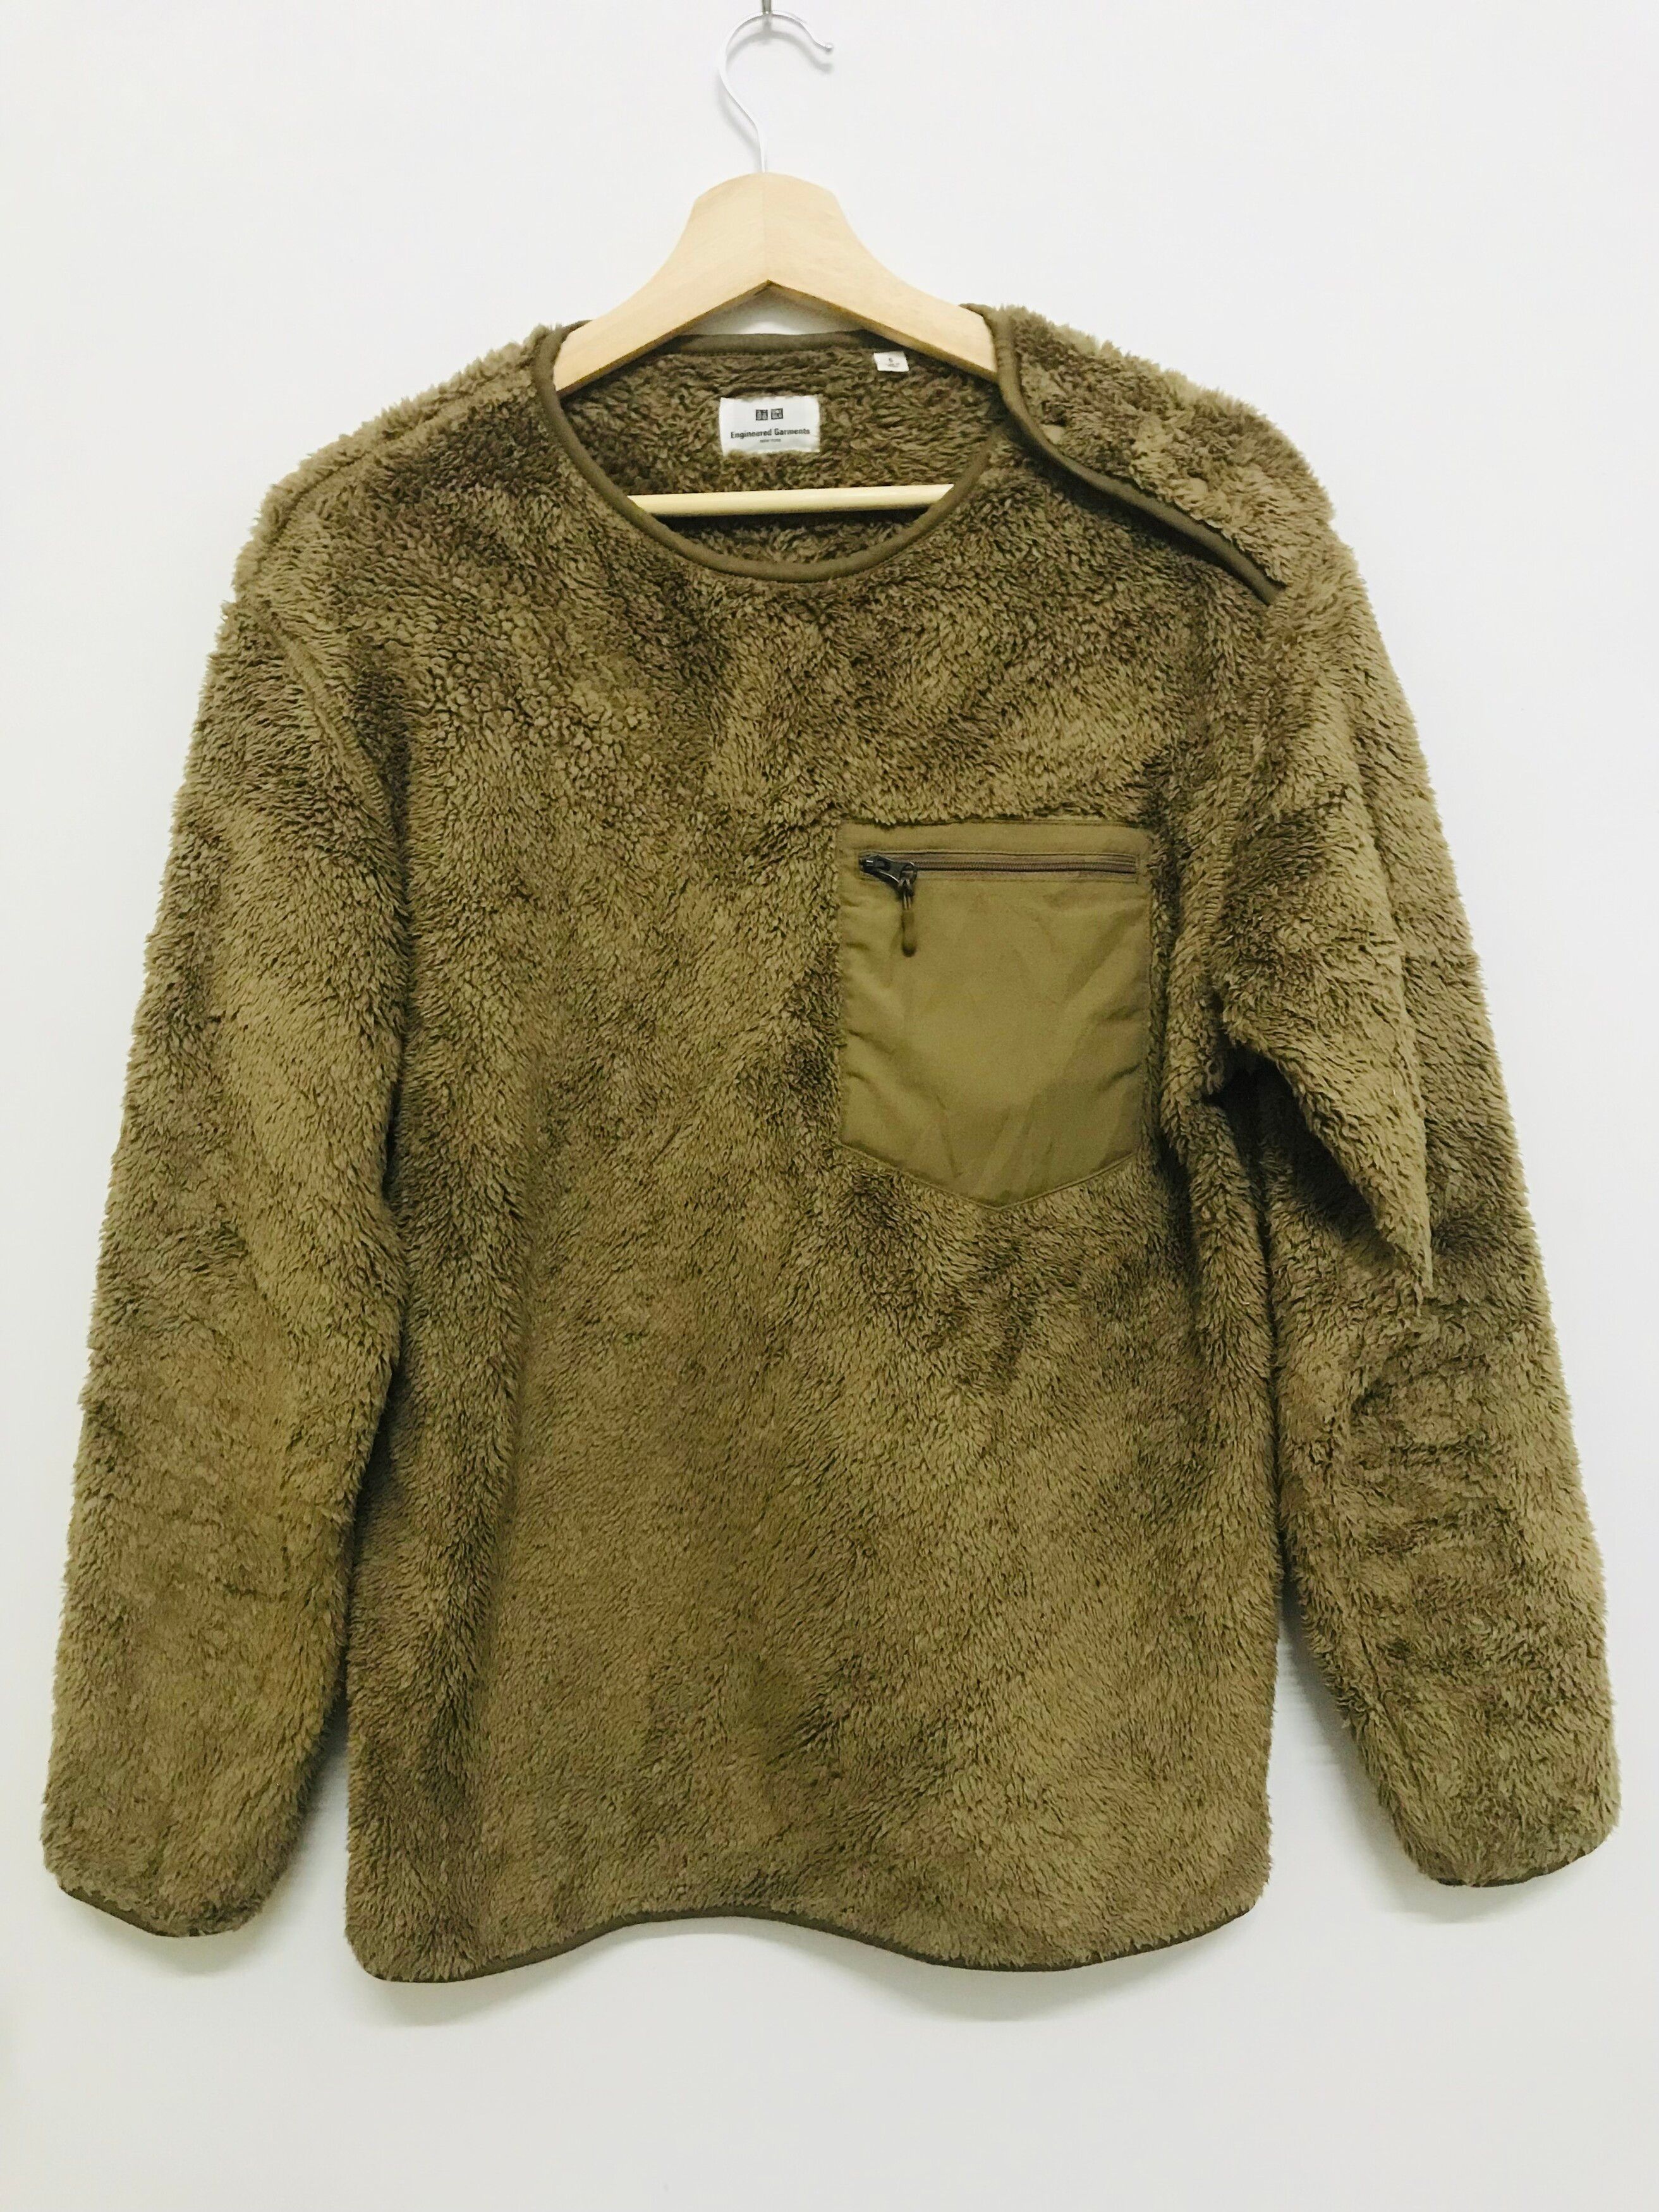 Uniqlo Engineered Garments Fleece Sweater - 1